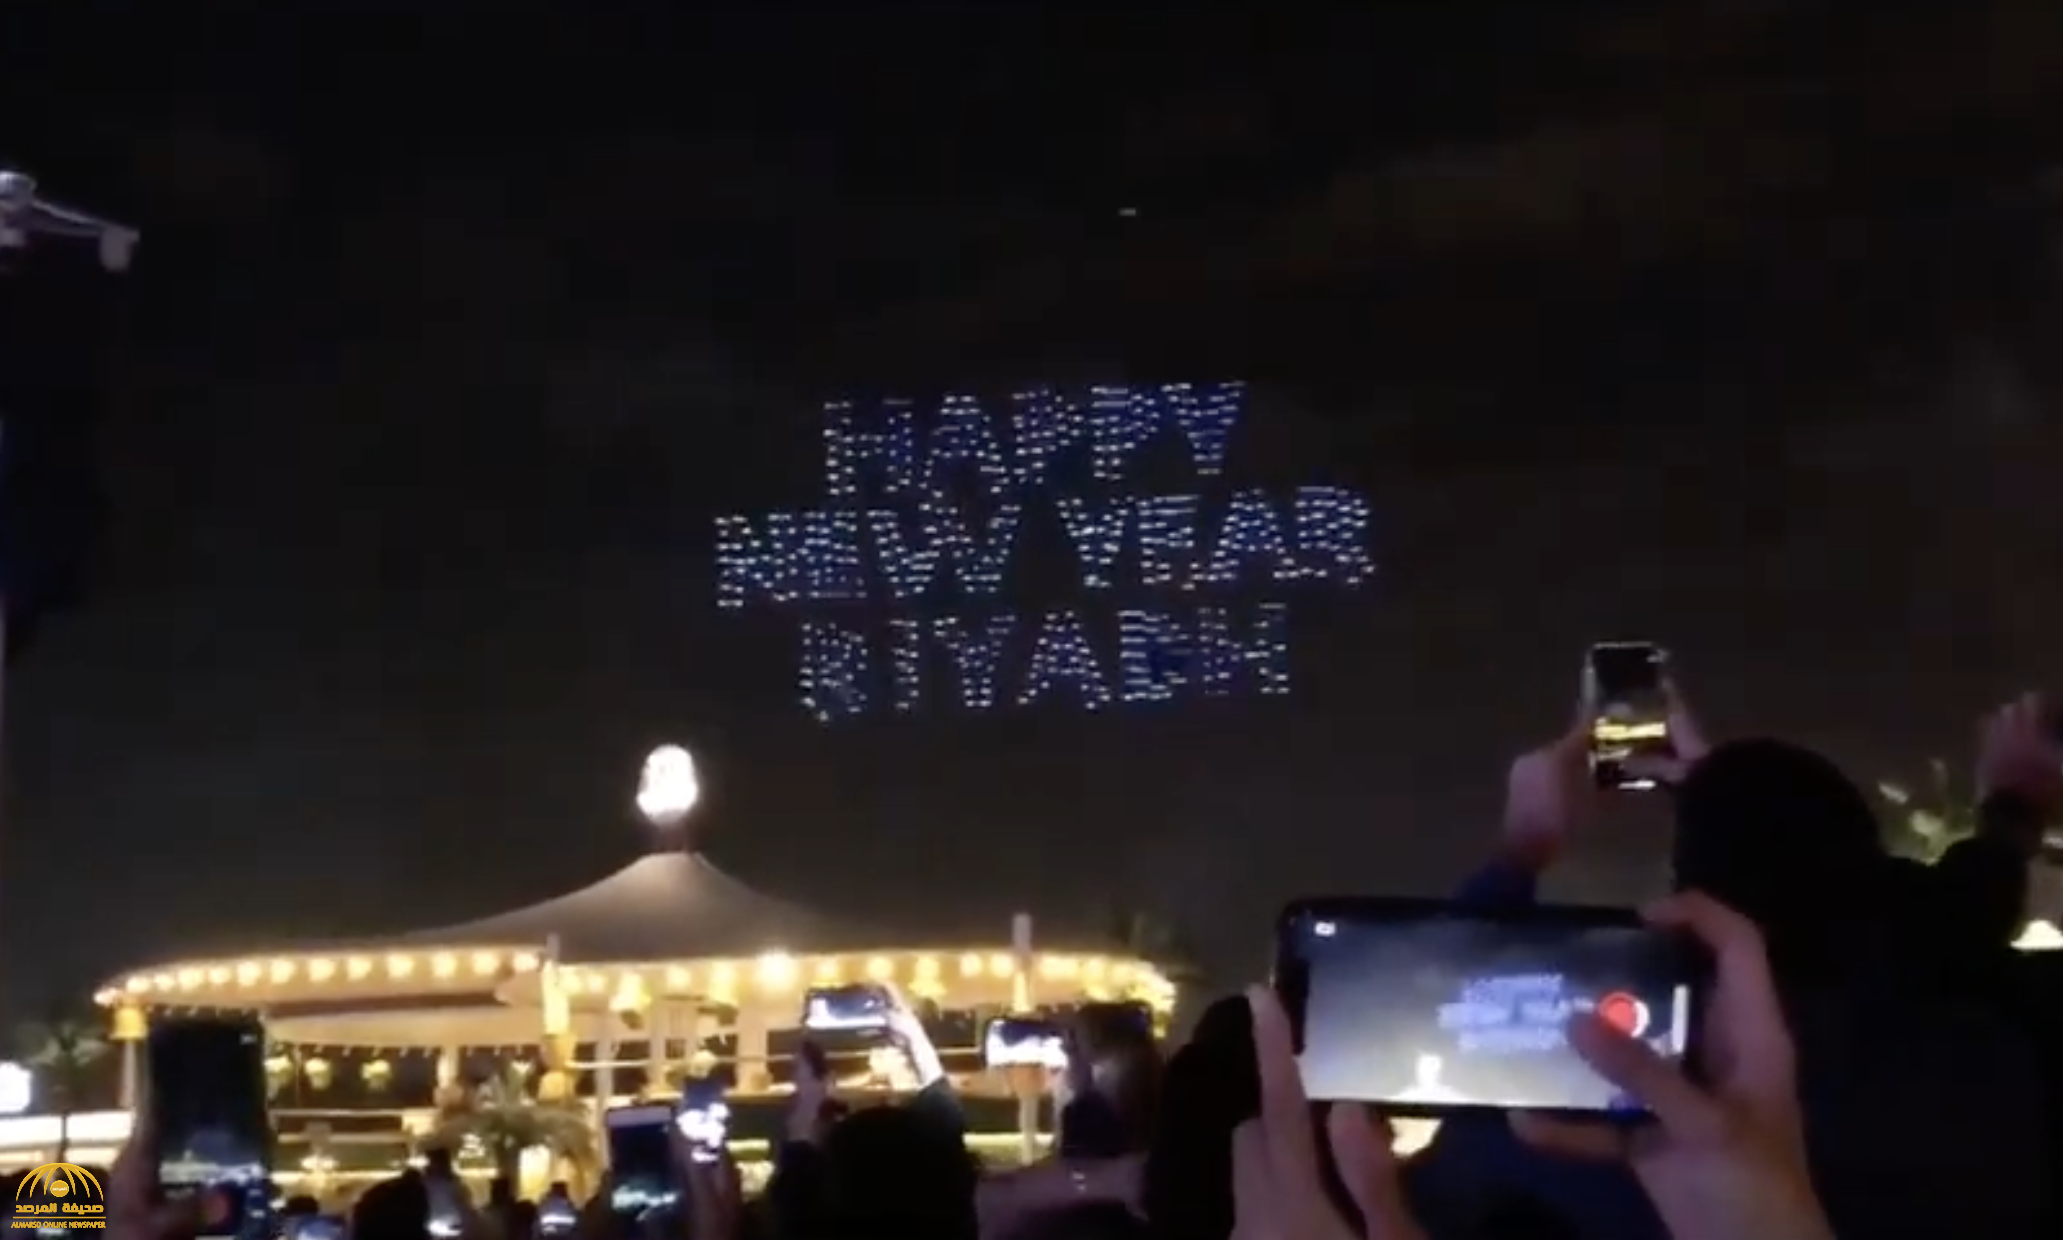 لأول مرة.. شاهد : الرياض تحتفل بالعام الجديد 2020 بإطلاق تشكيلات ضخمة من الألعاب النارية